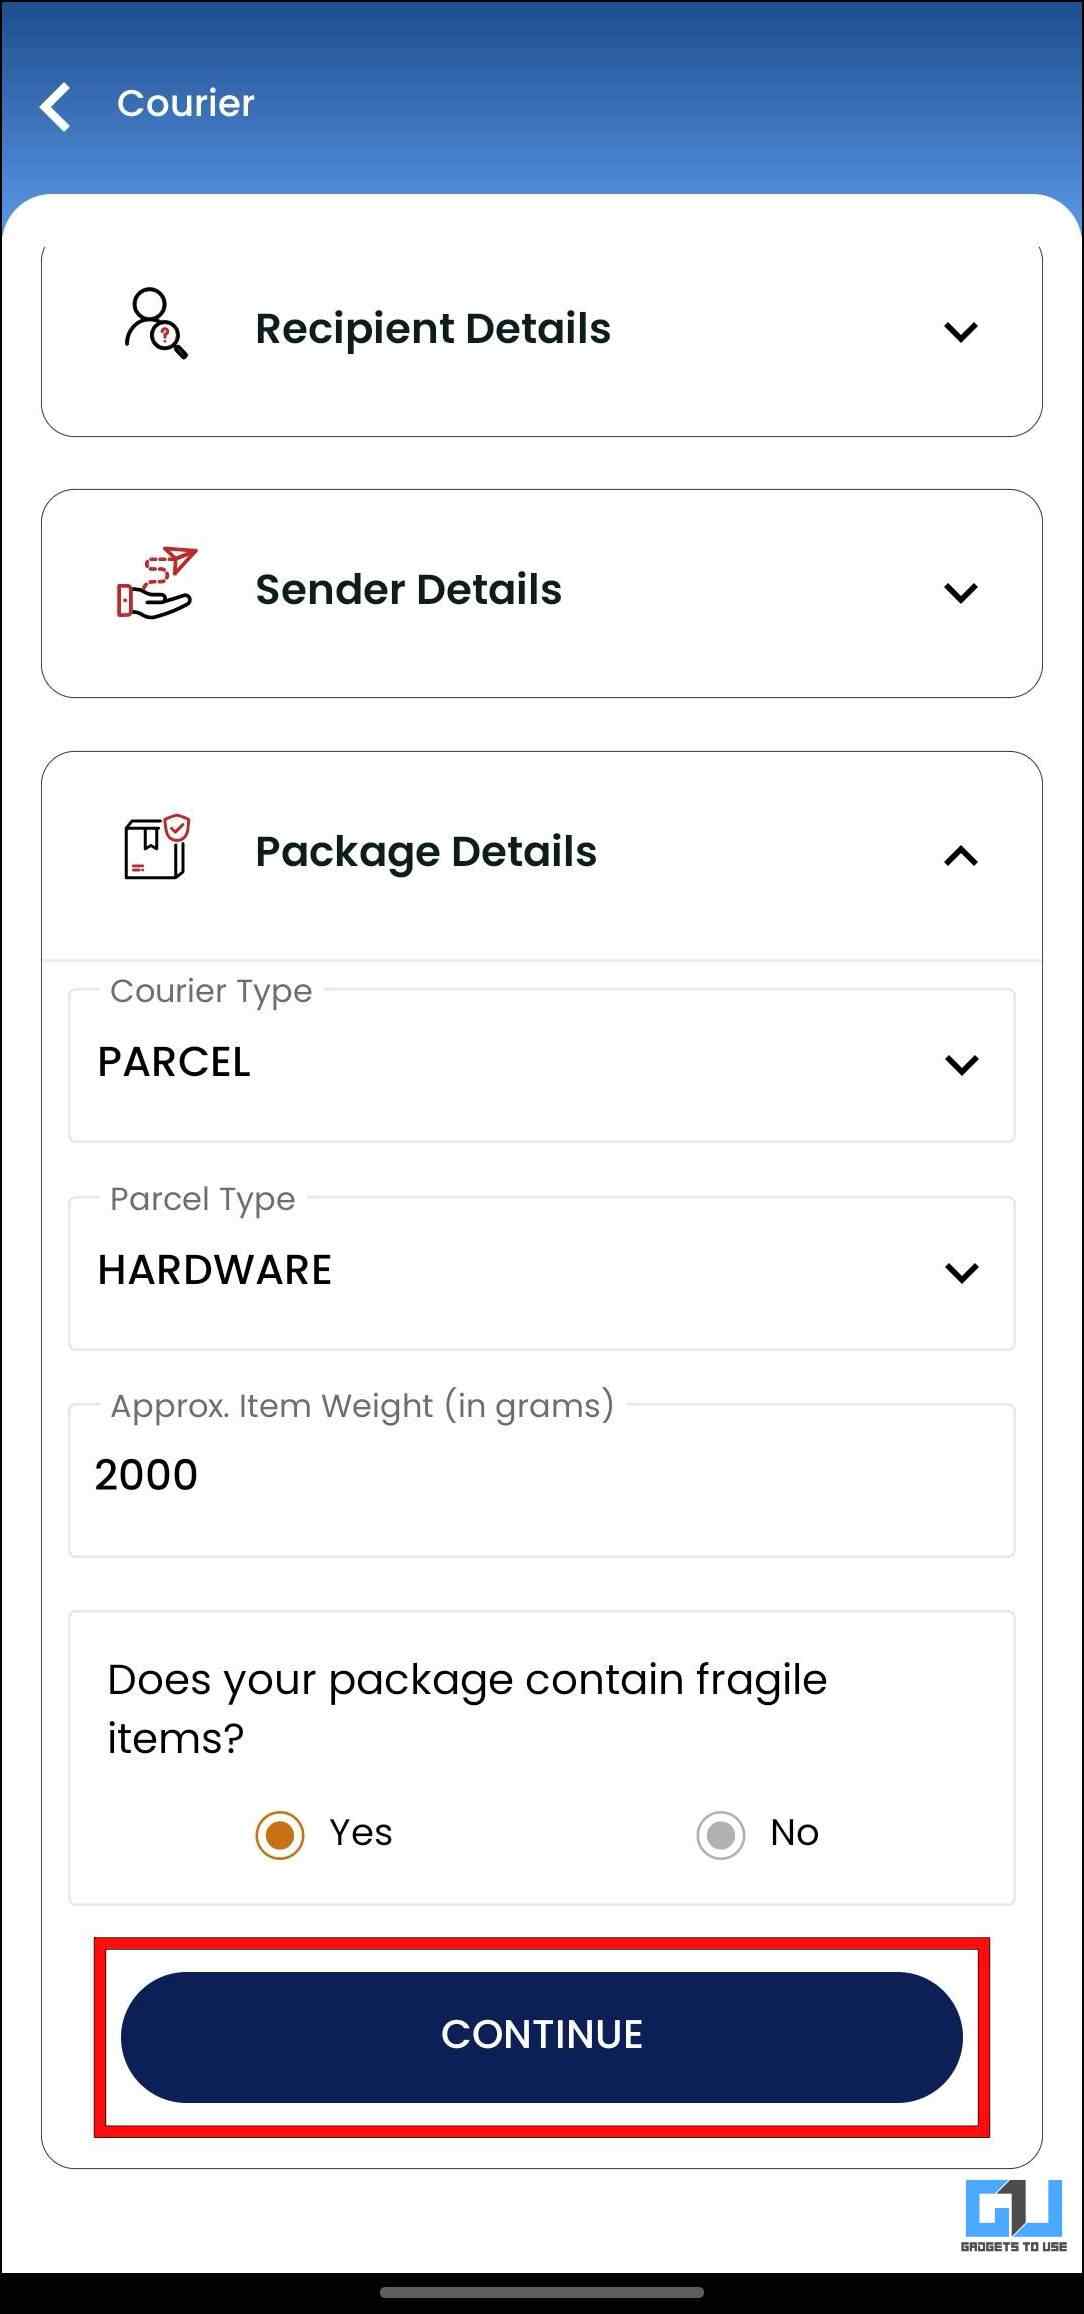 Enter Package Details